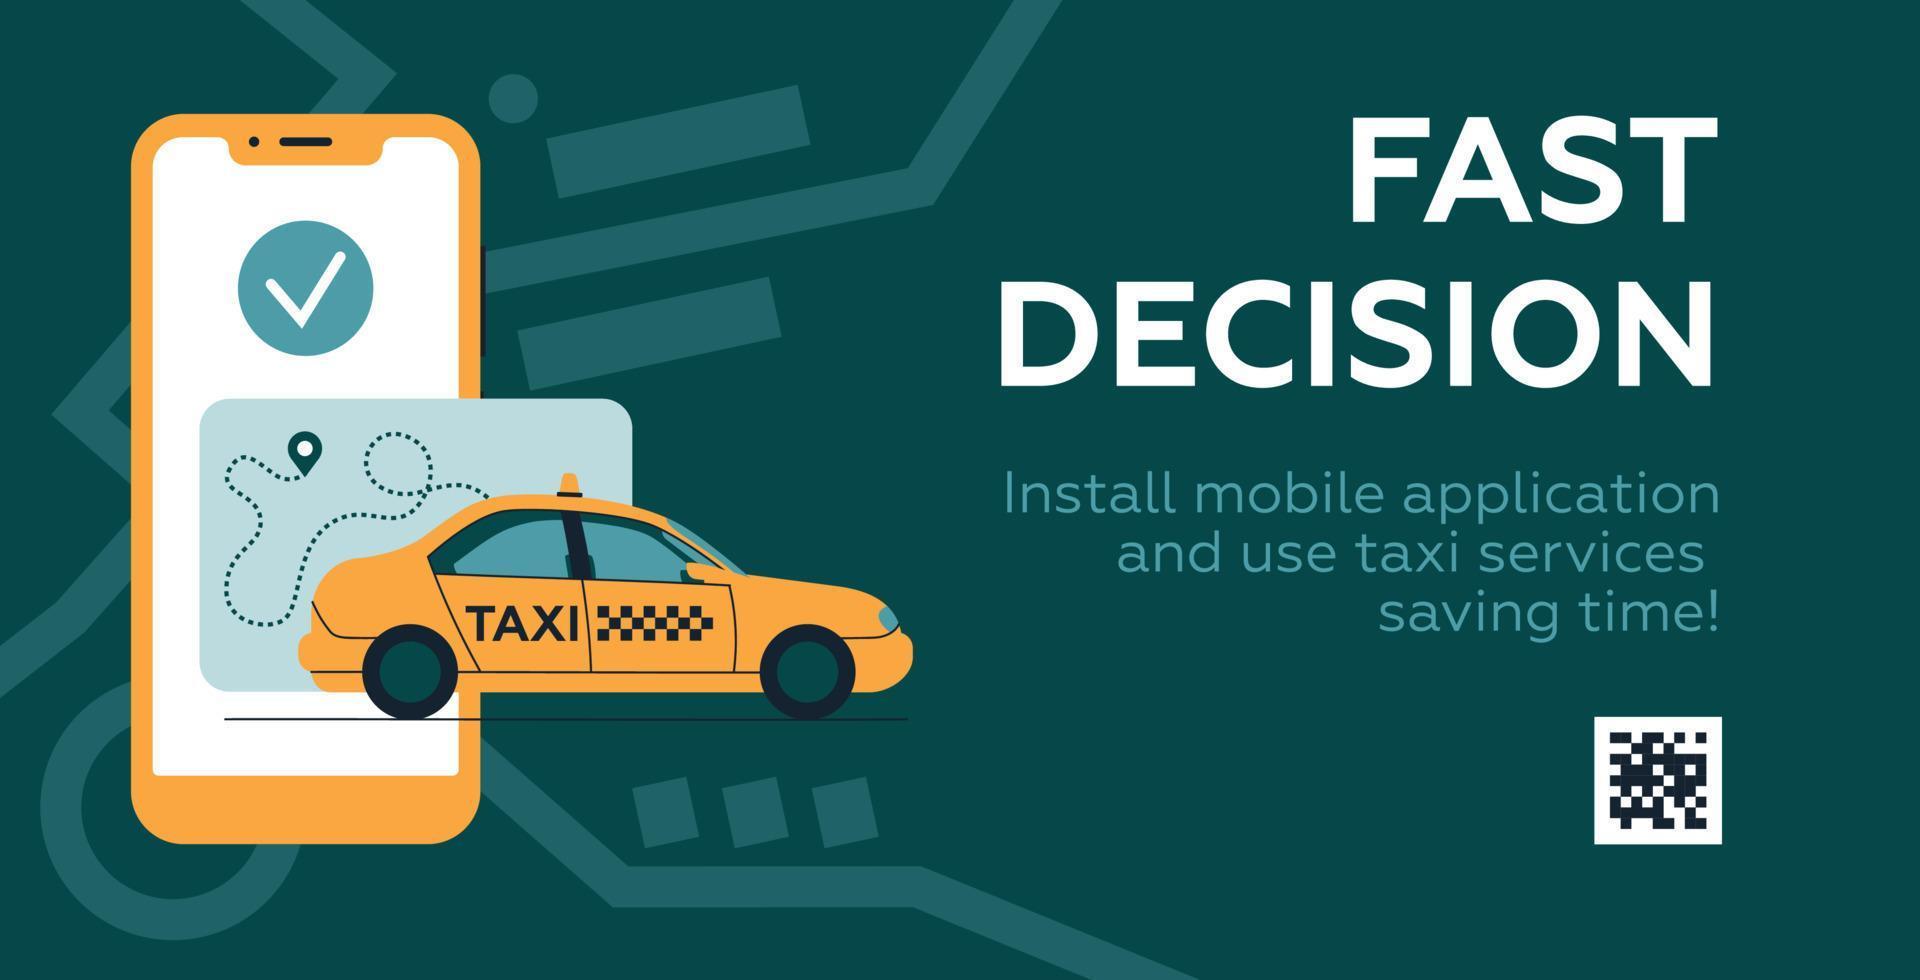 Taxi. voiture jaune et téléphone portable.le concept d'un livret publicitaire. image vectorielle. vecteur